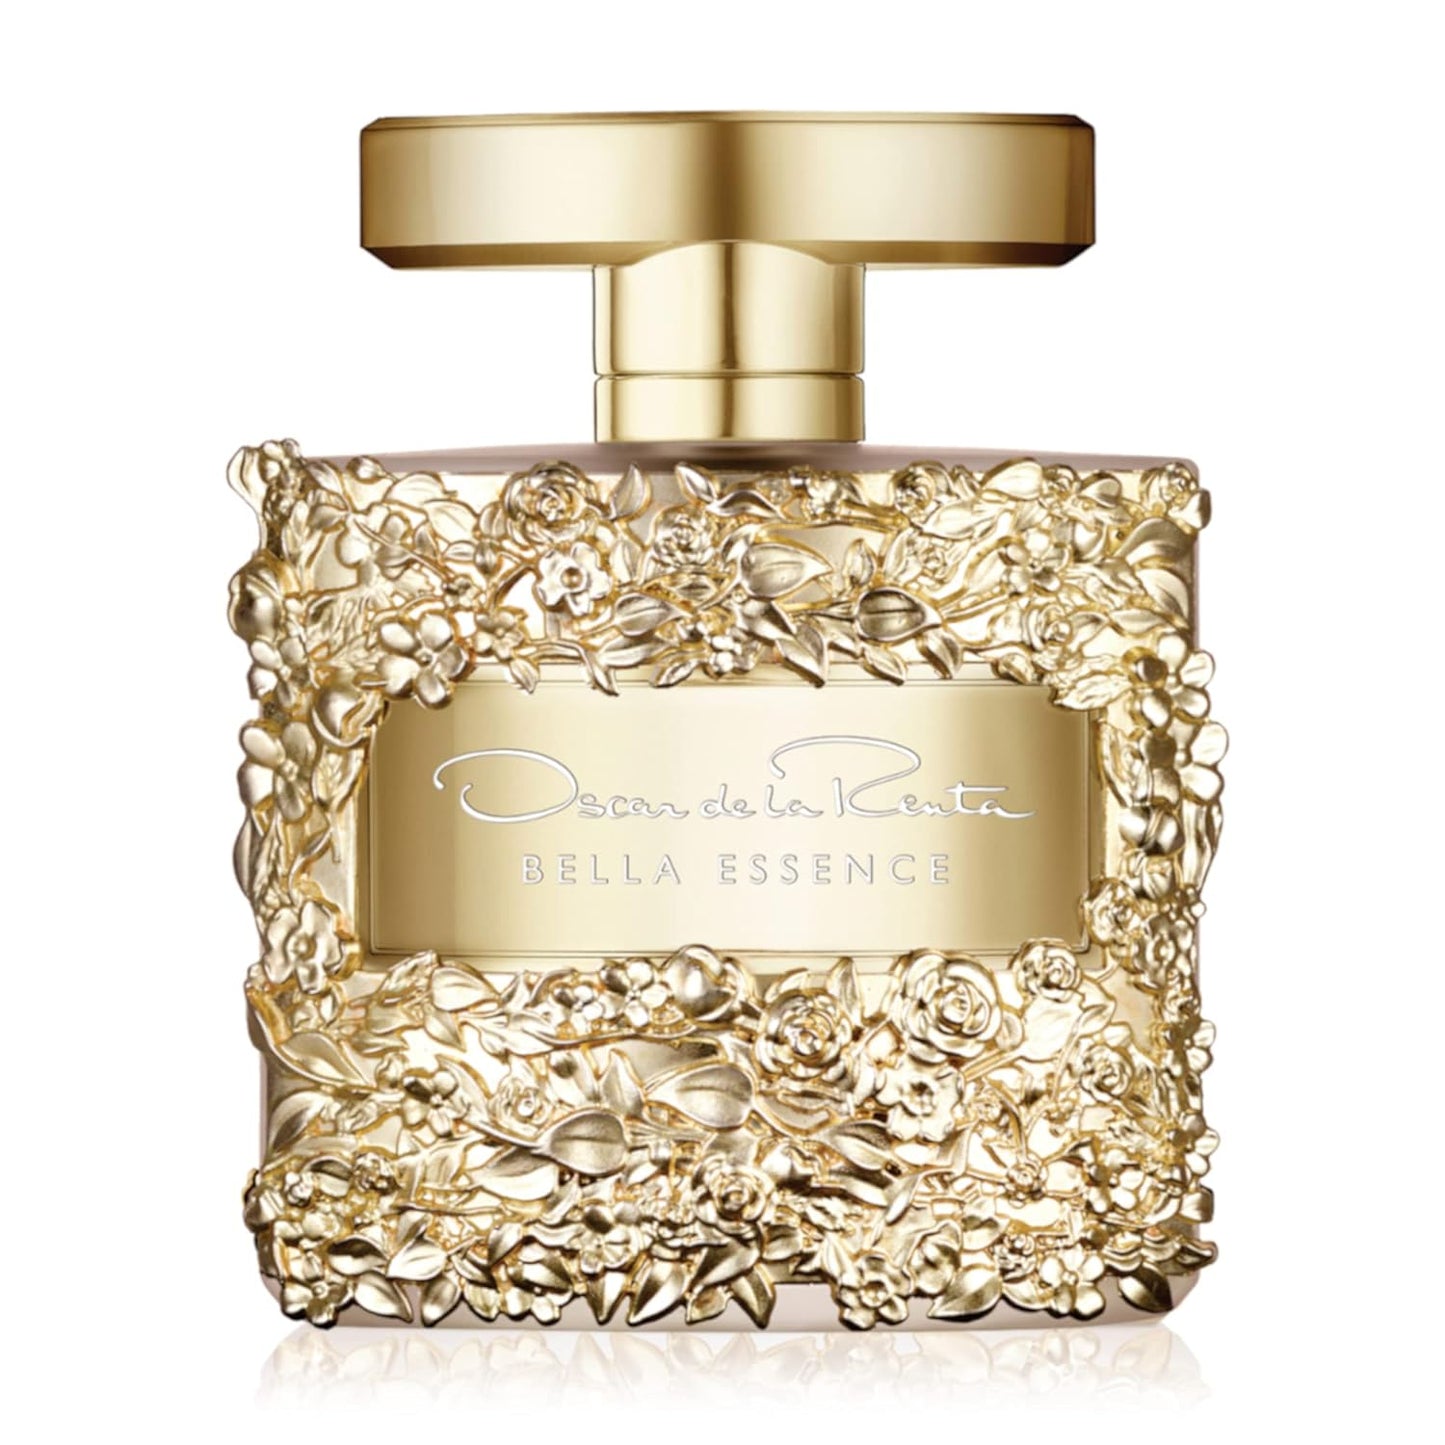 Oscar de la Renta Bella Essence Eau de Parfum Perfume Spray for Women